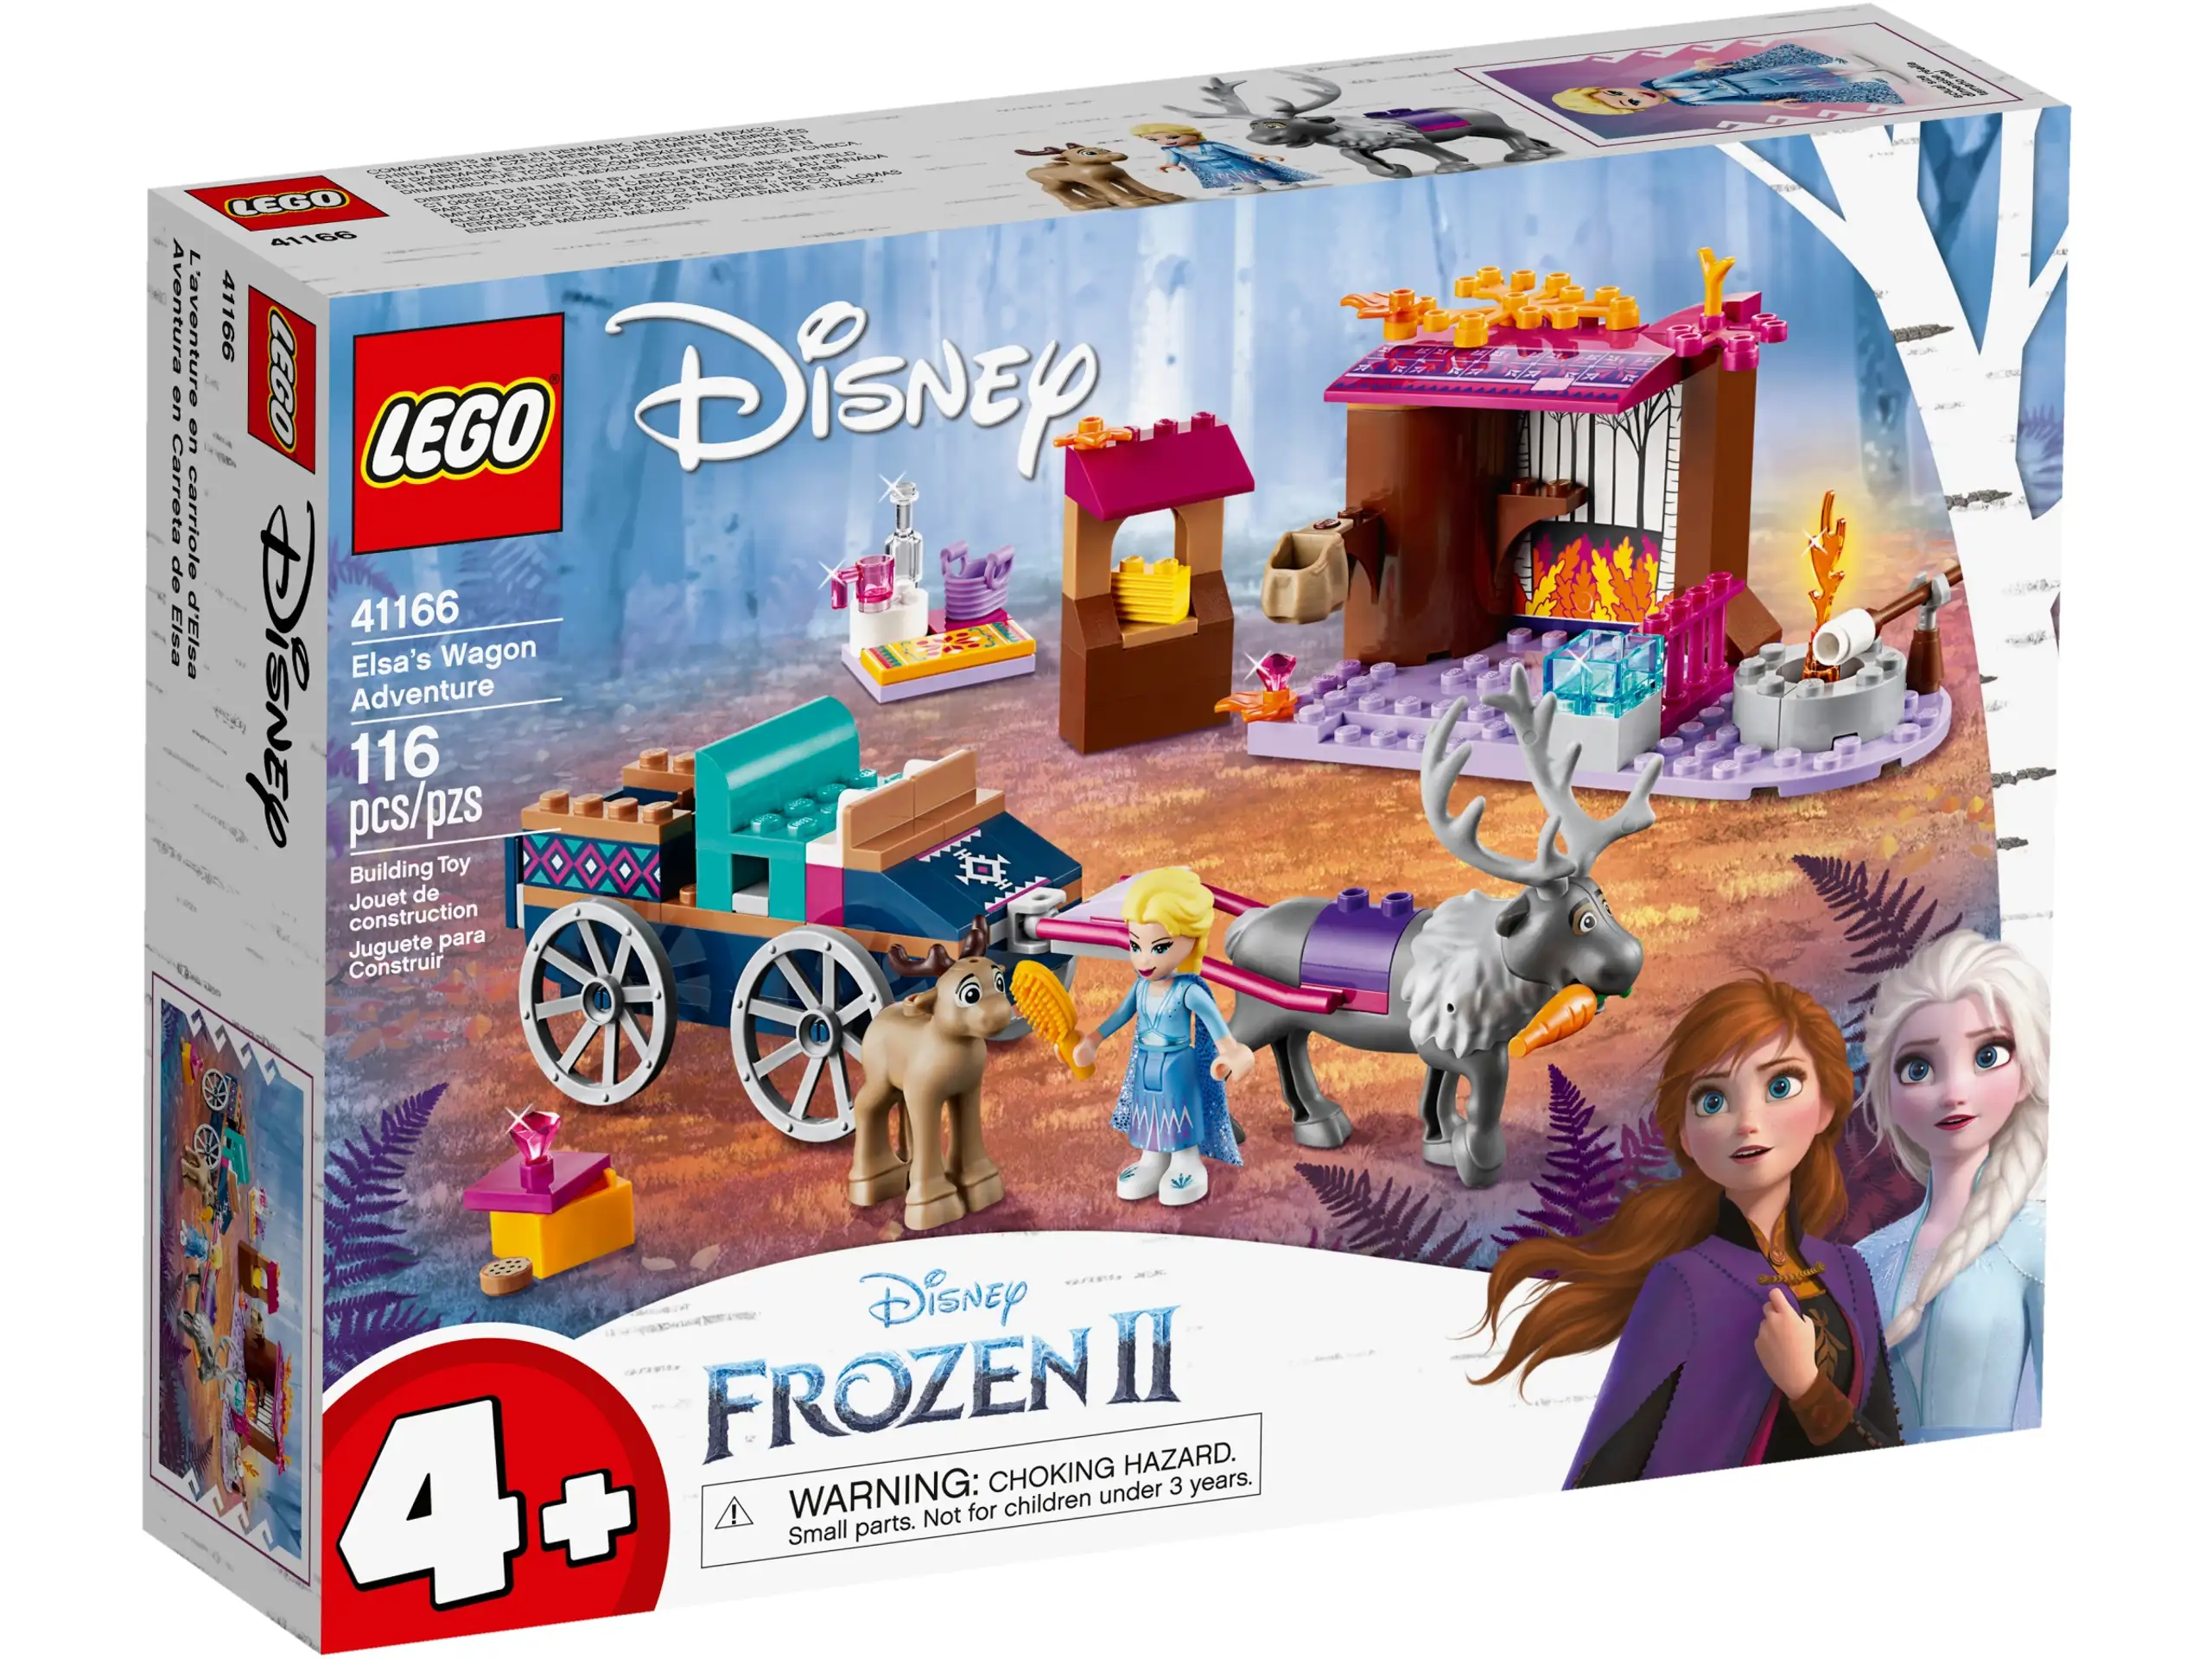 LEGO Disney Frozen II Elsa’s Wagon Carriage Adventure